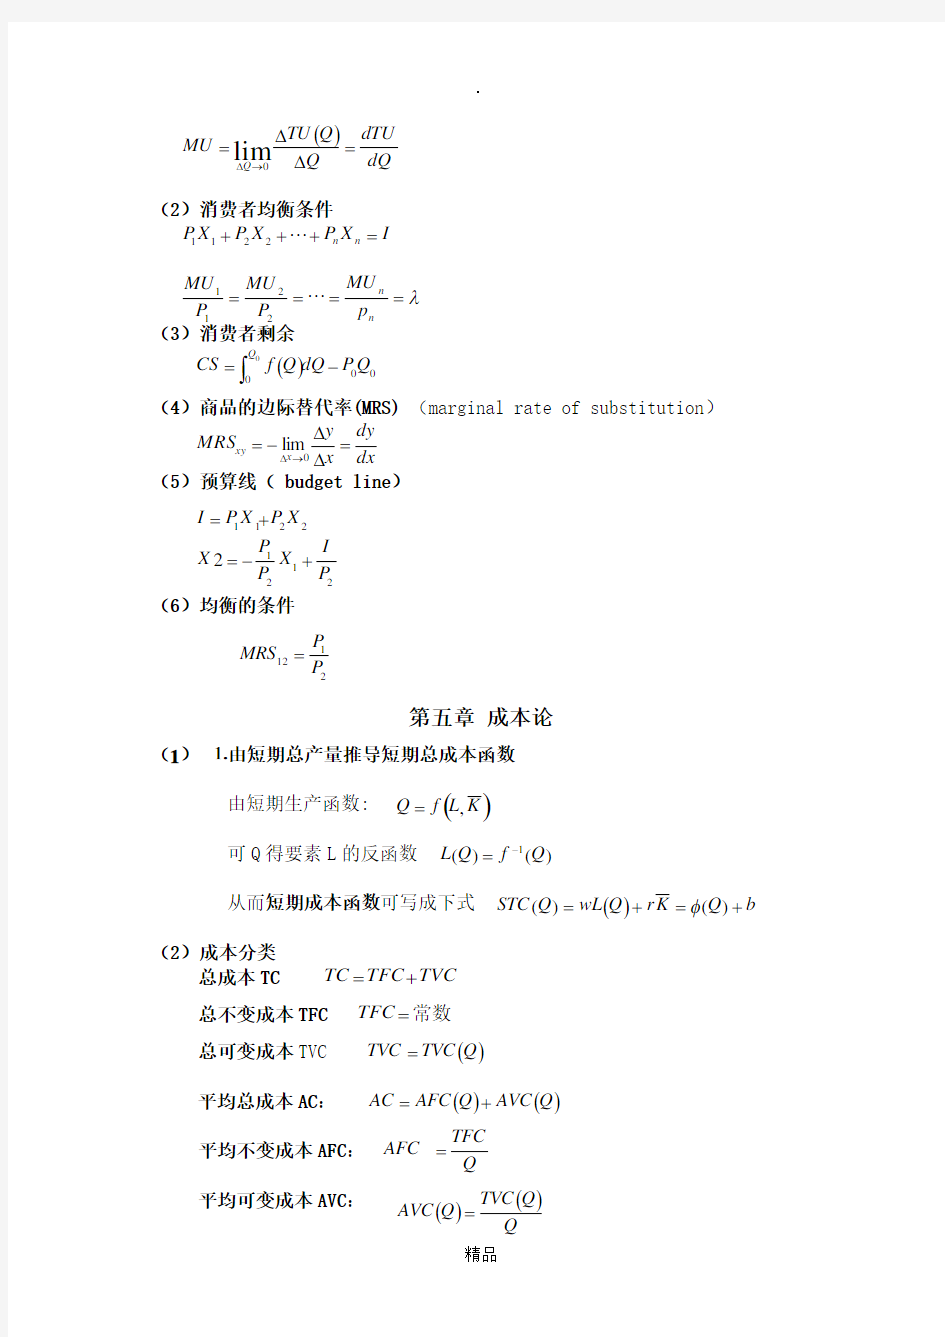 微观经济学计算公式(最全)35070